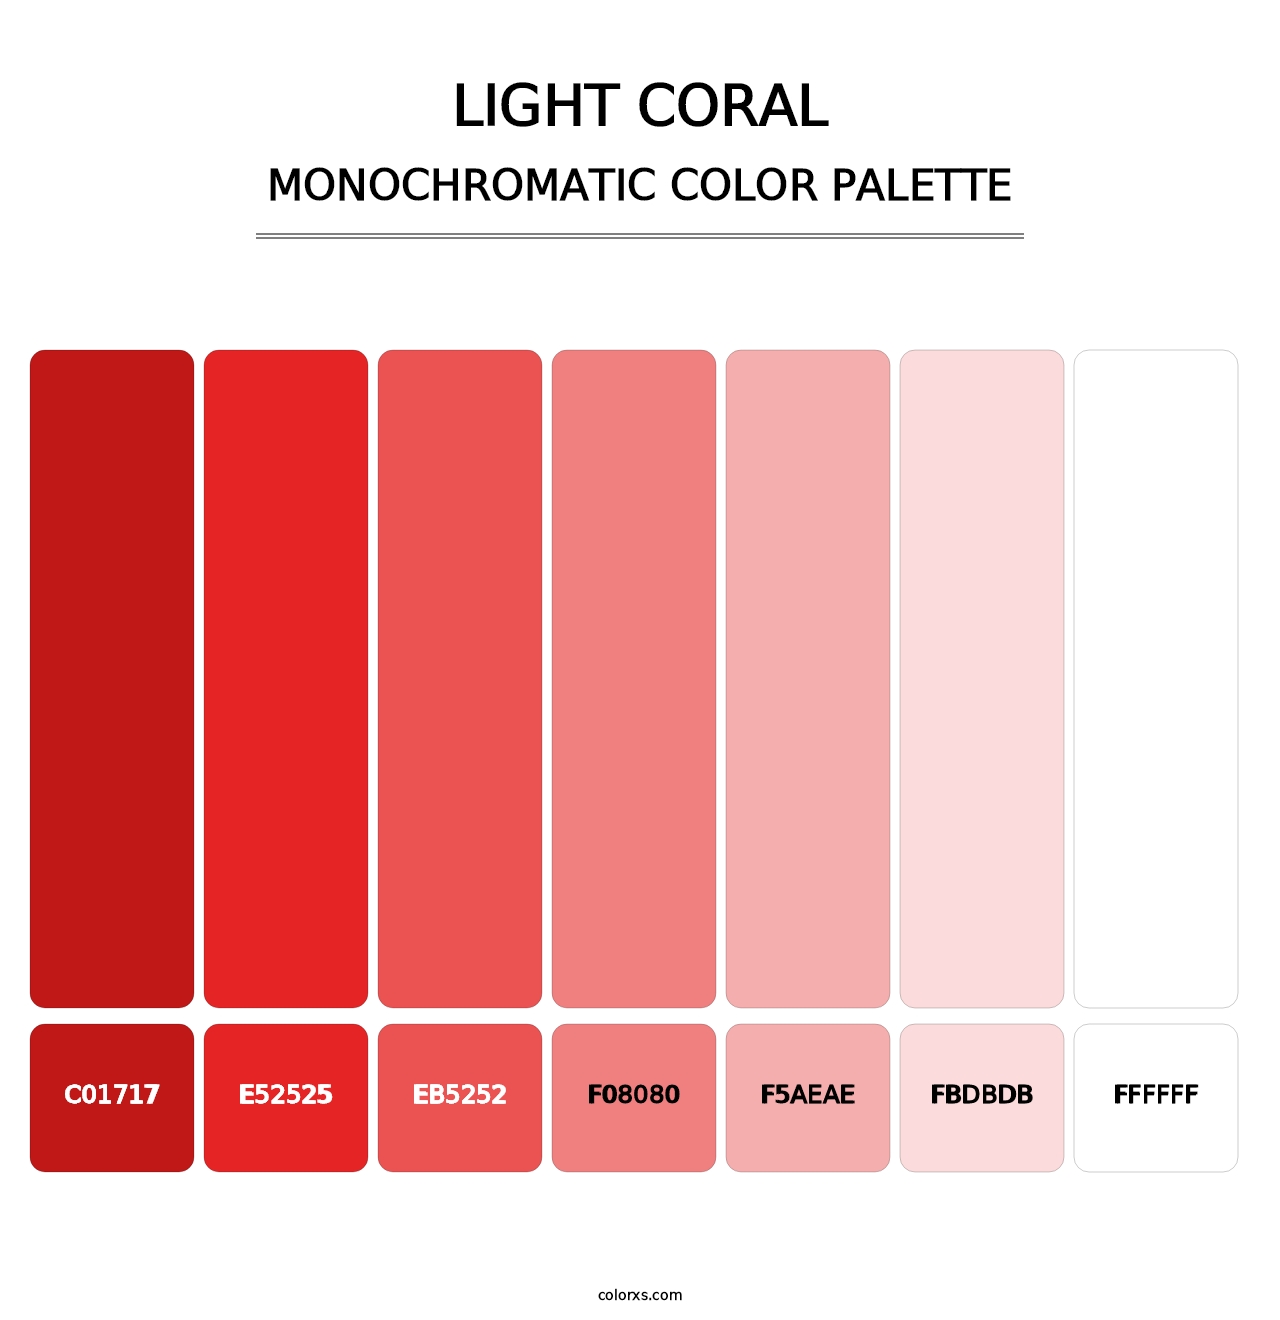 Light Coral - Monochromatic Color Palette